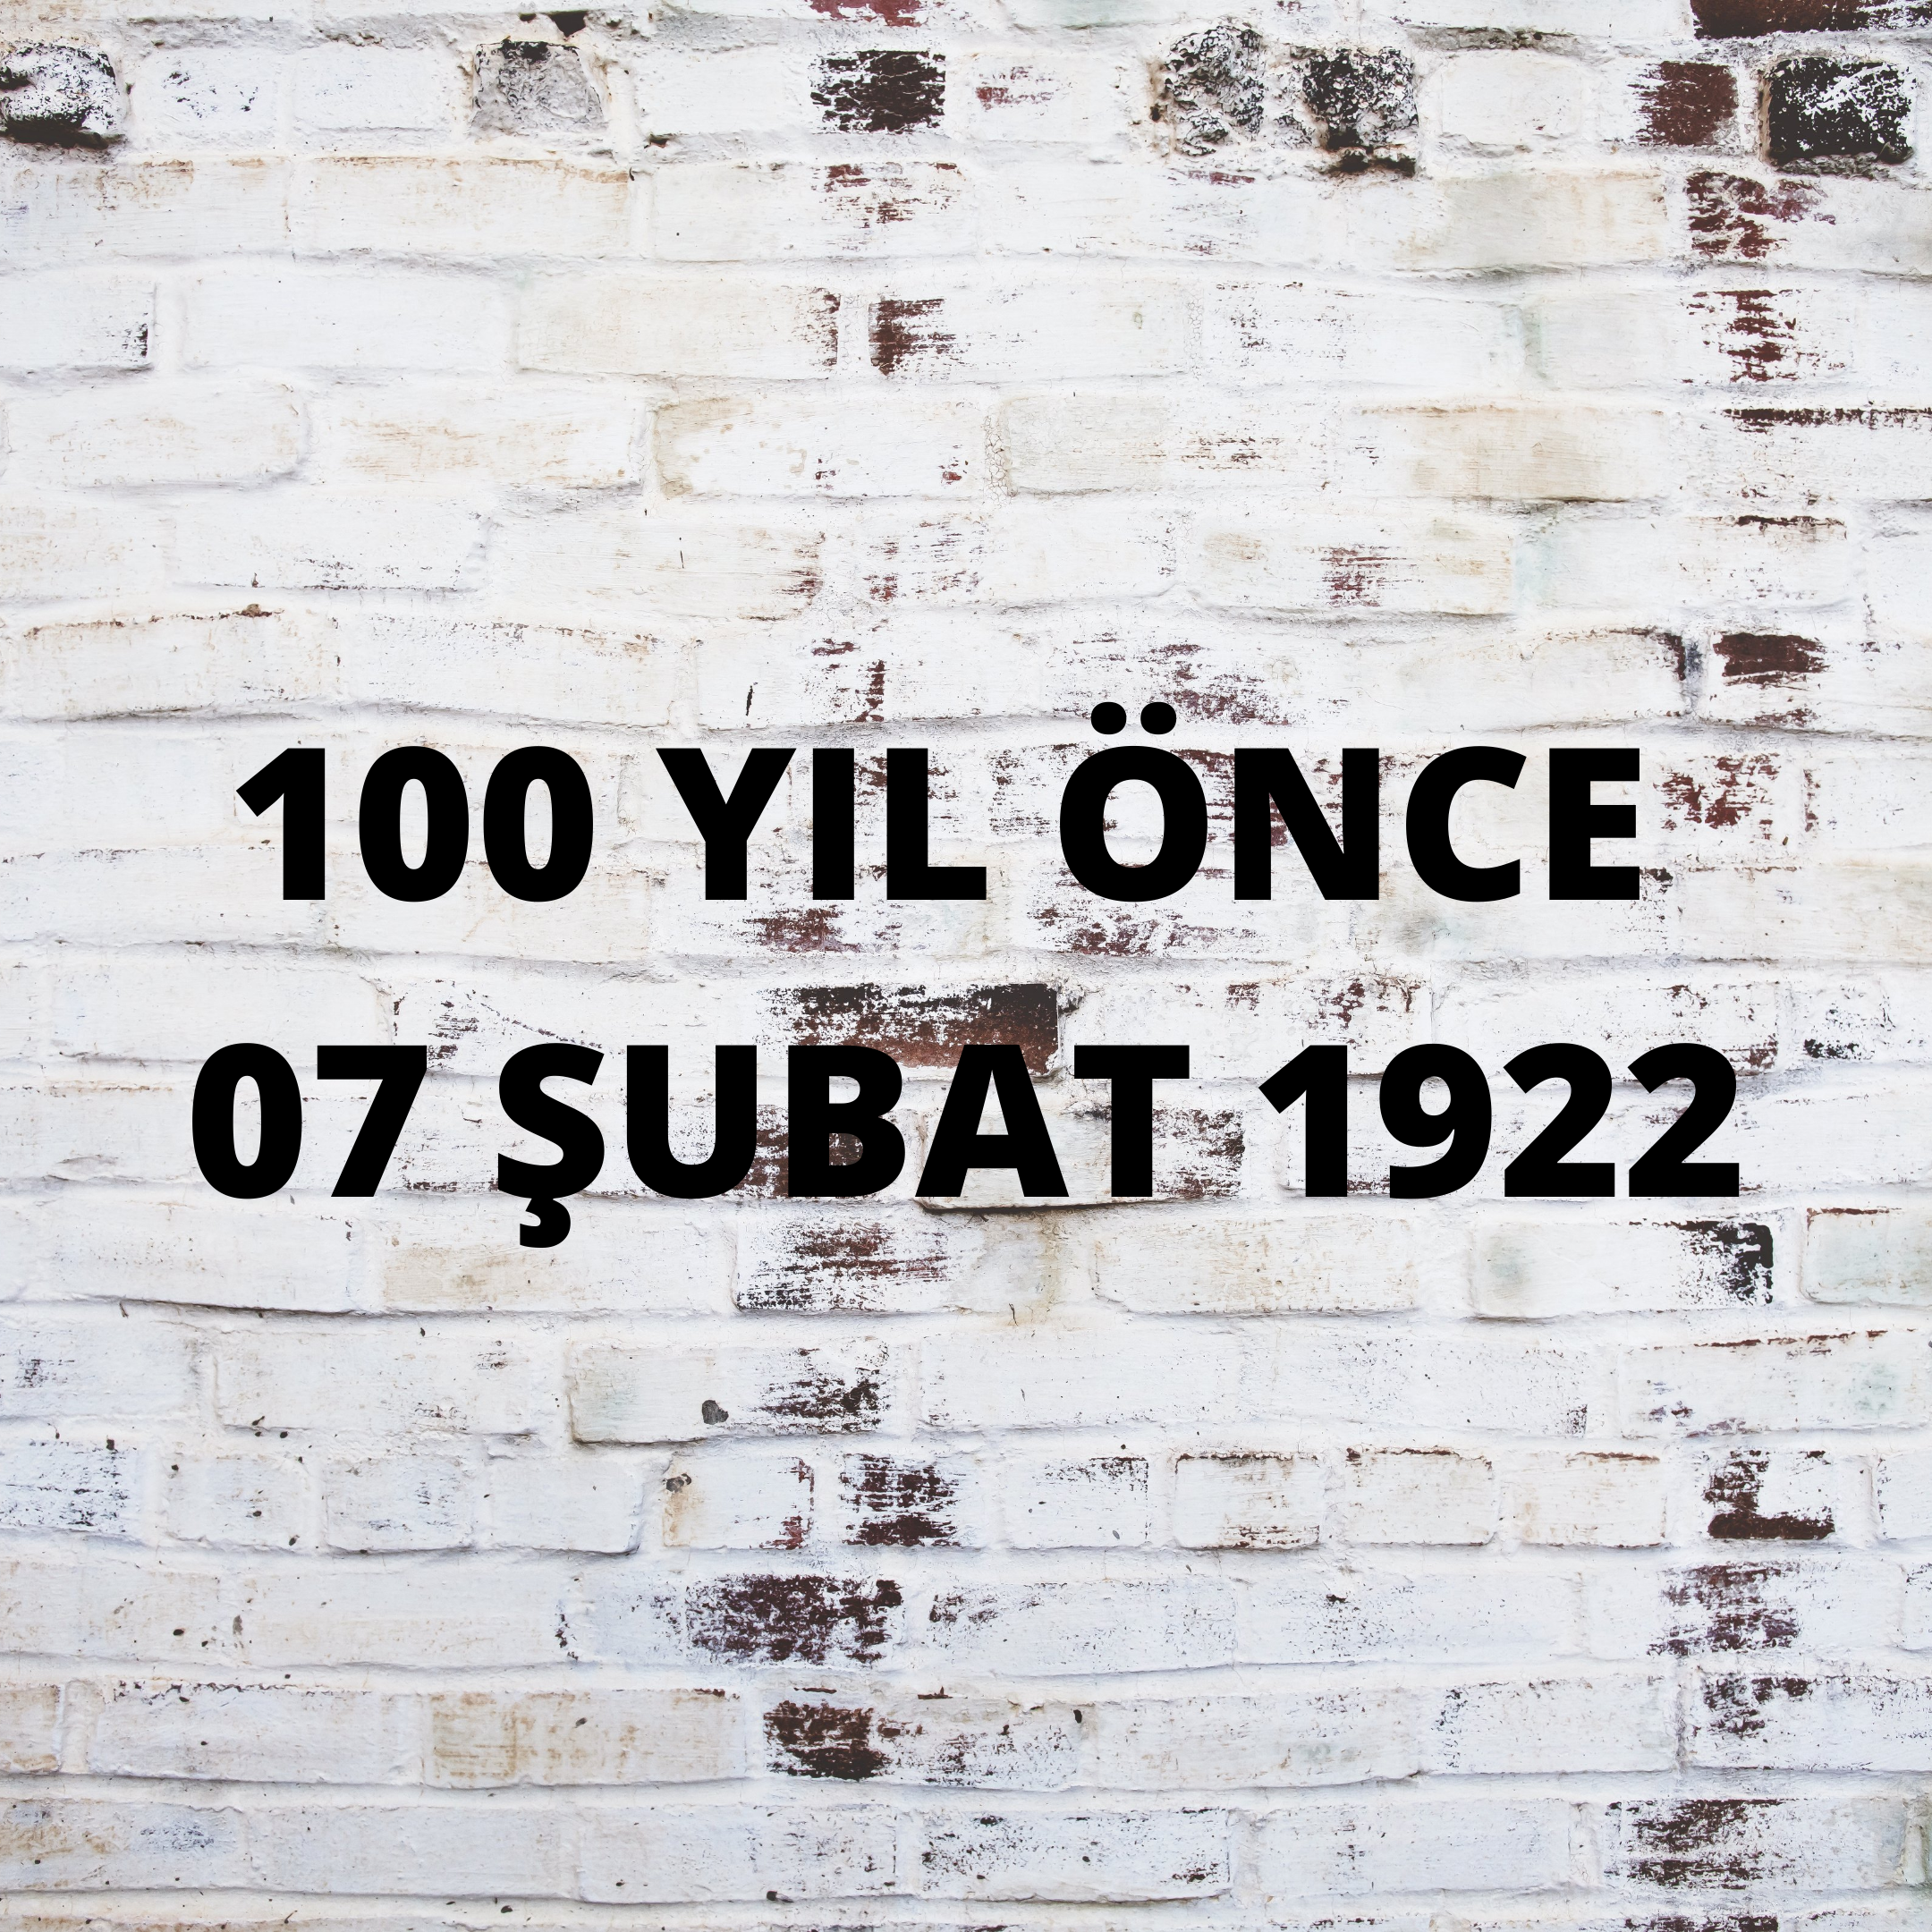 100 YIL ÖNCE 7 ŞUBAT 1922